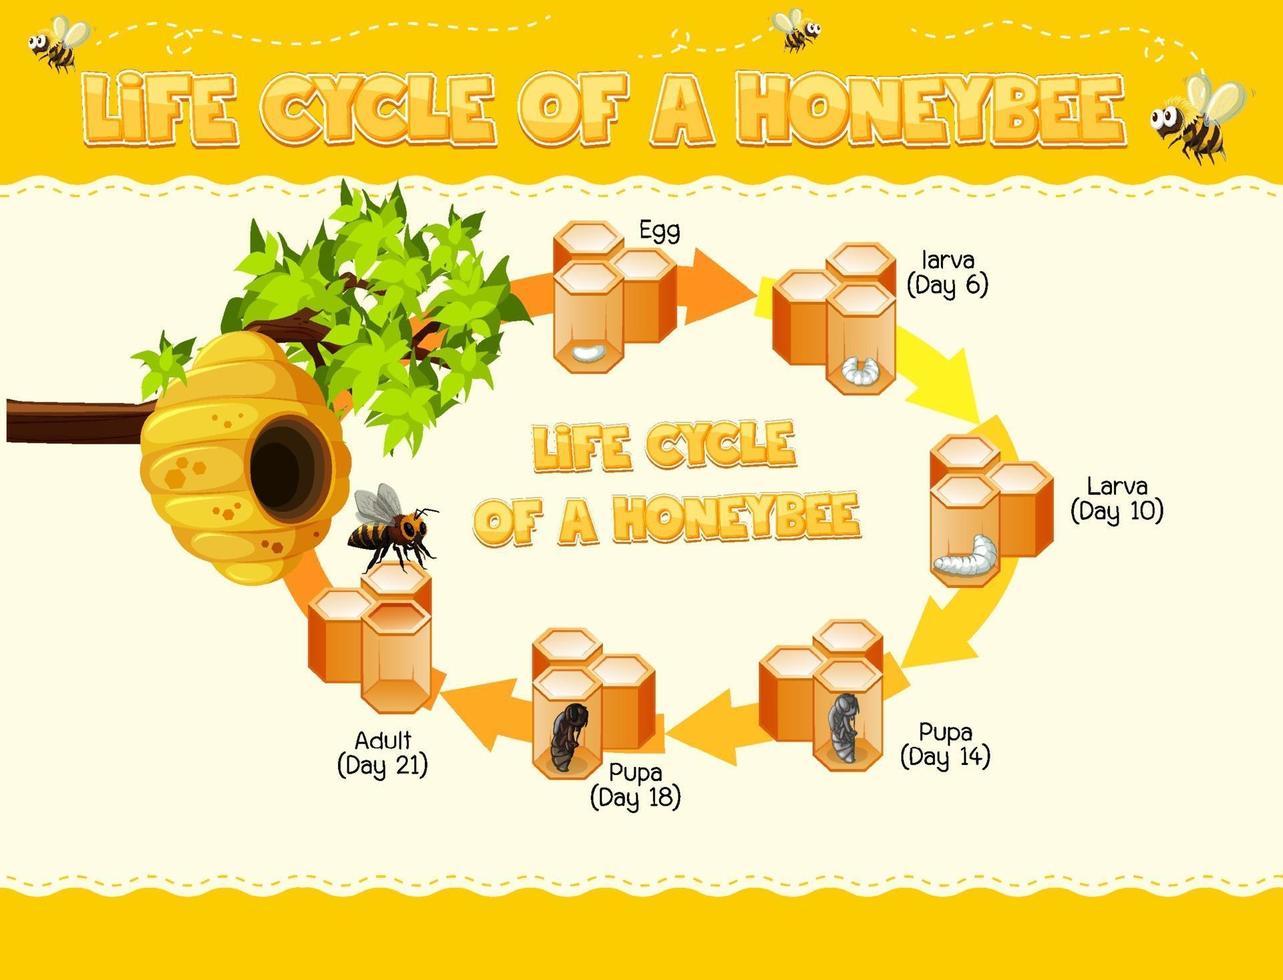 diagramma che mostra il ciclo di vita delle api vettore